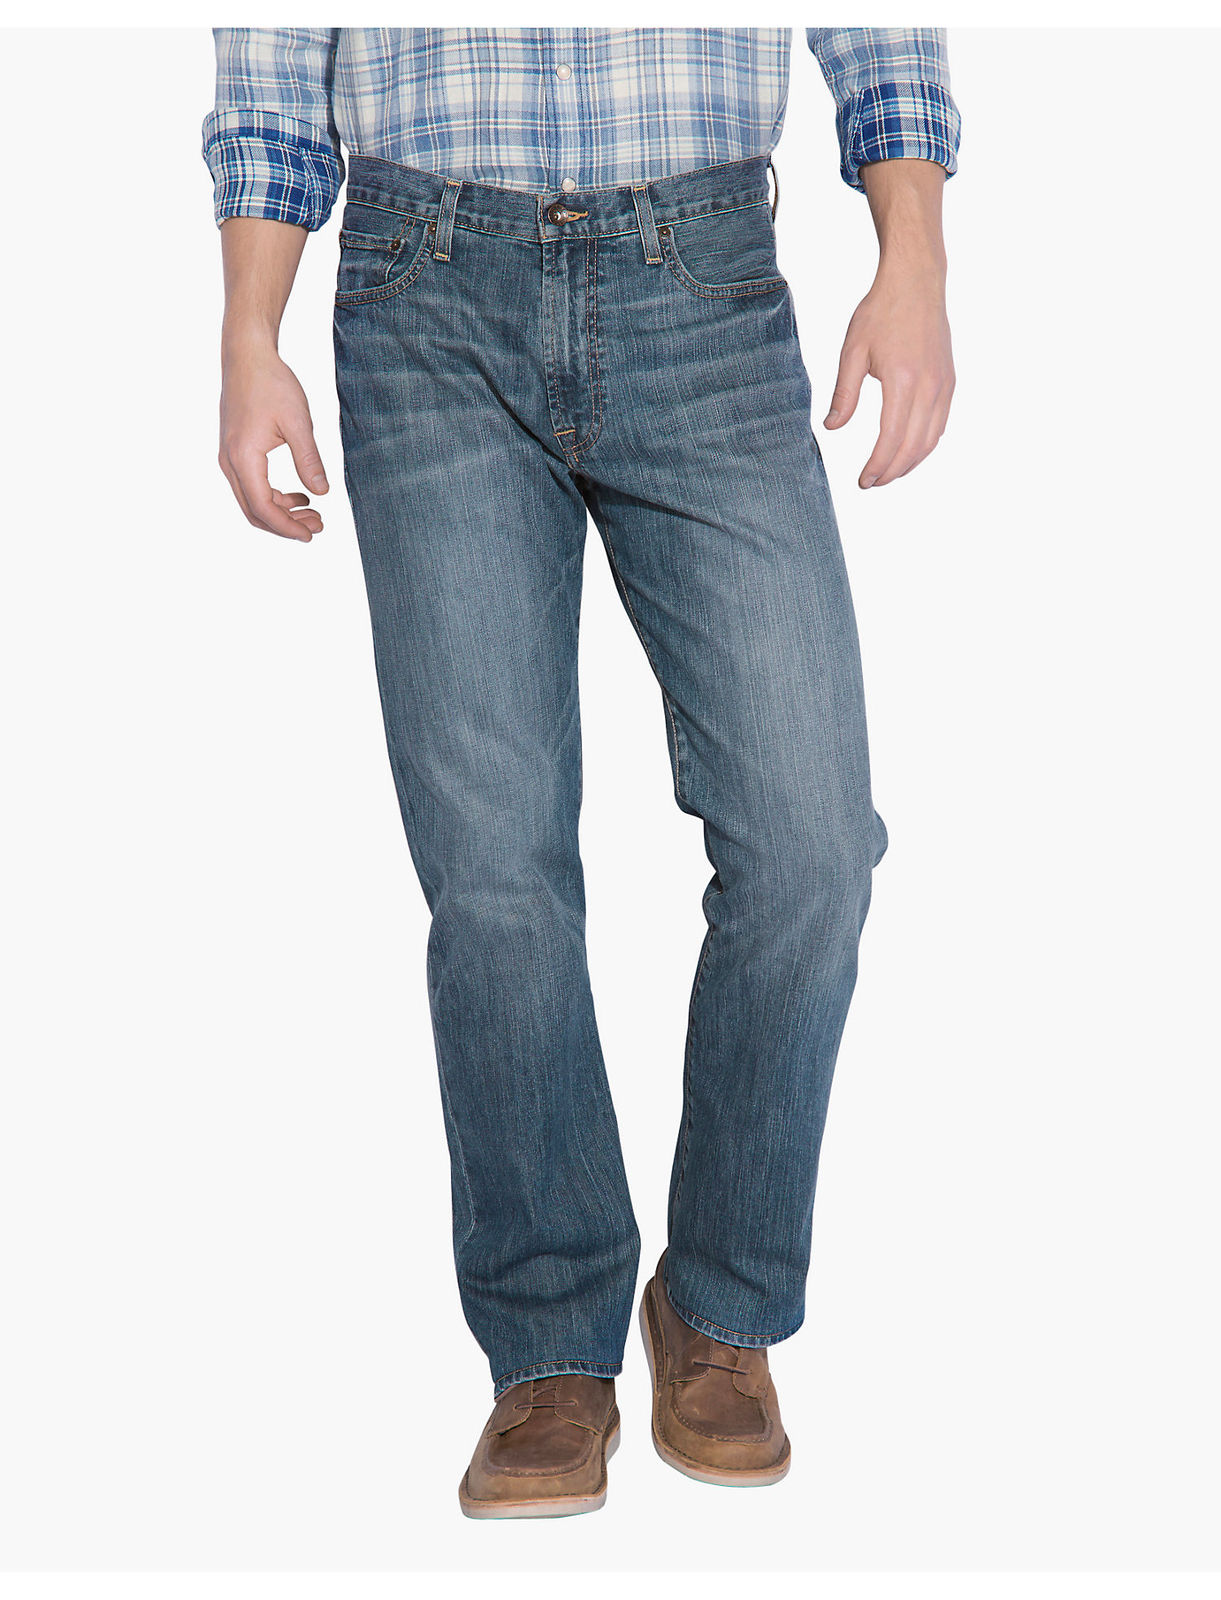 Lucky Brand Men’s 181 Relaxed Straight Jeans—$29.99! (Reg $99.00)